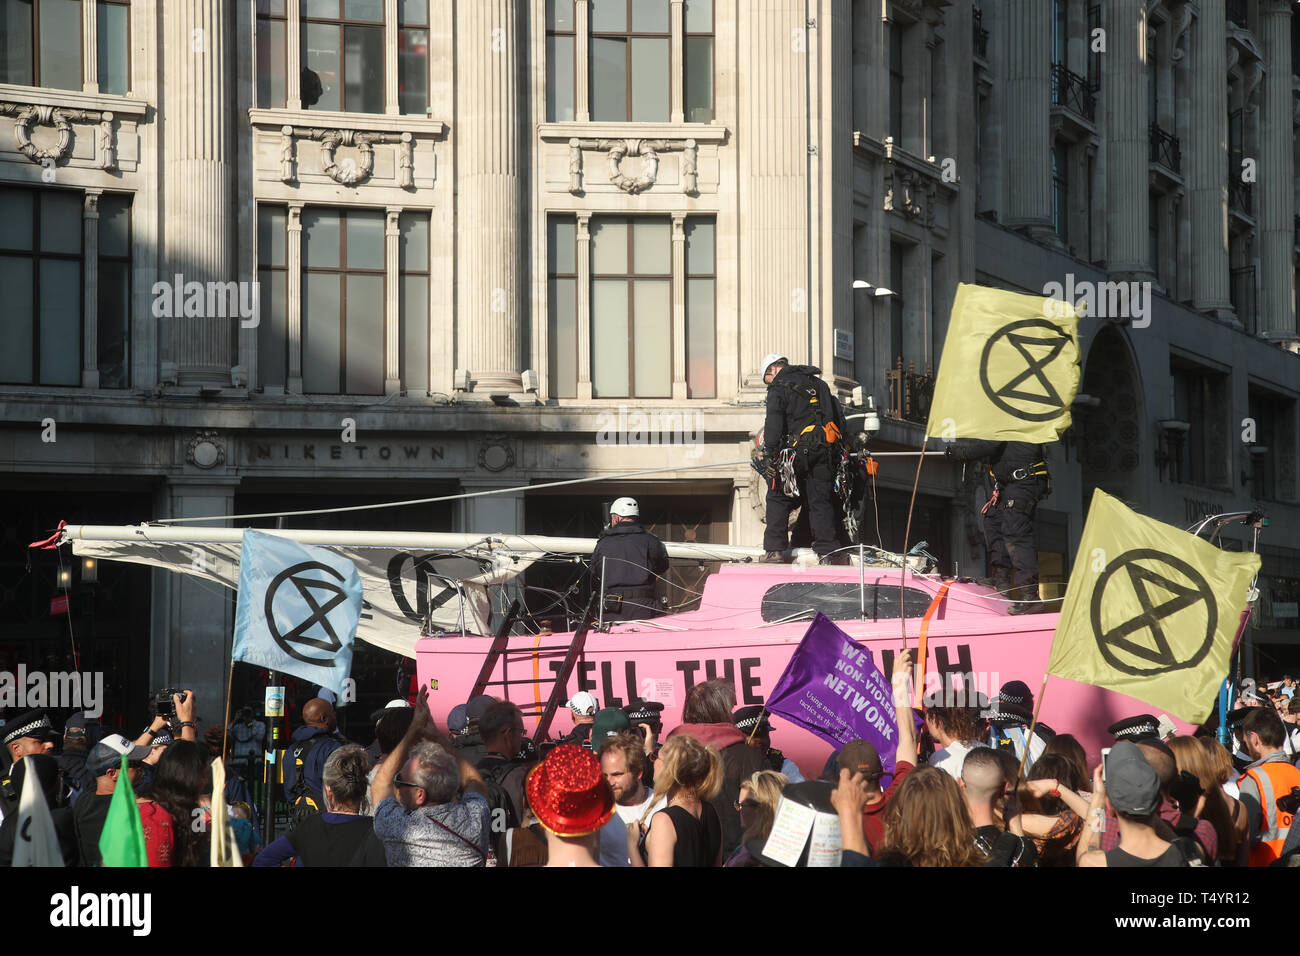 Prendre le contrôle de la police d'Extinction Rebellion "Dire la vérité" bateau, alors que les manifestations se poursuivent à Oxford Circus à Londres. Banque D'Images